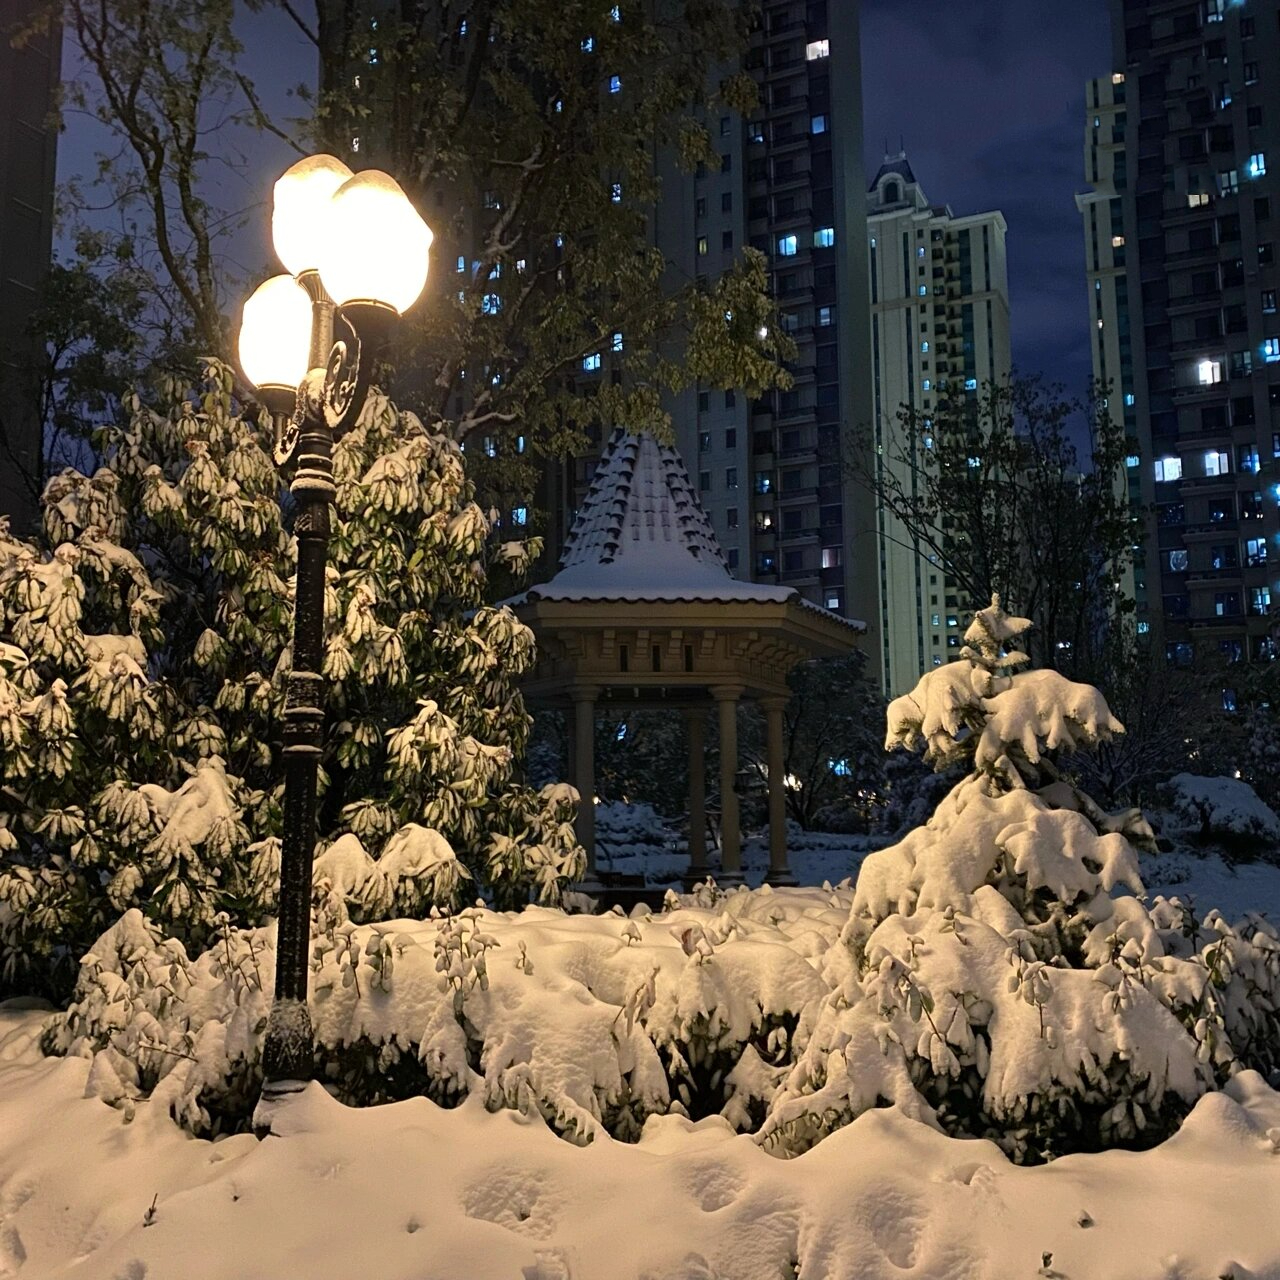 下雪的图片实景夜晚图片